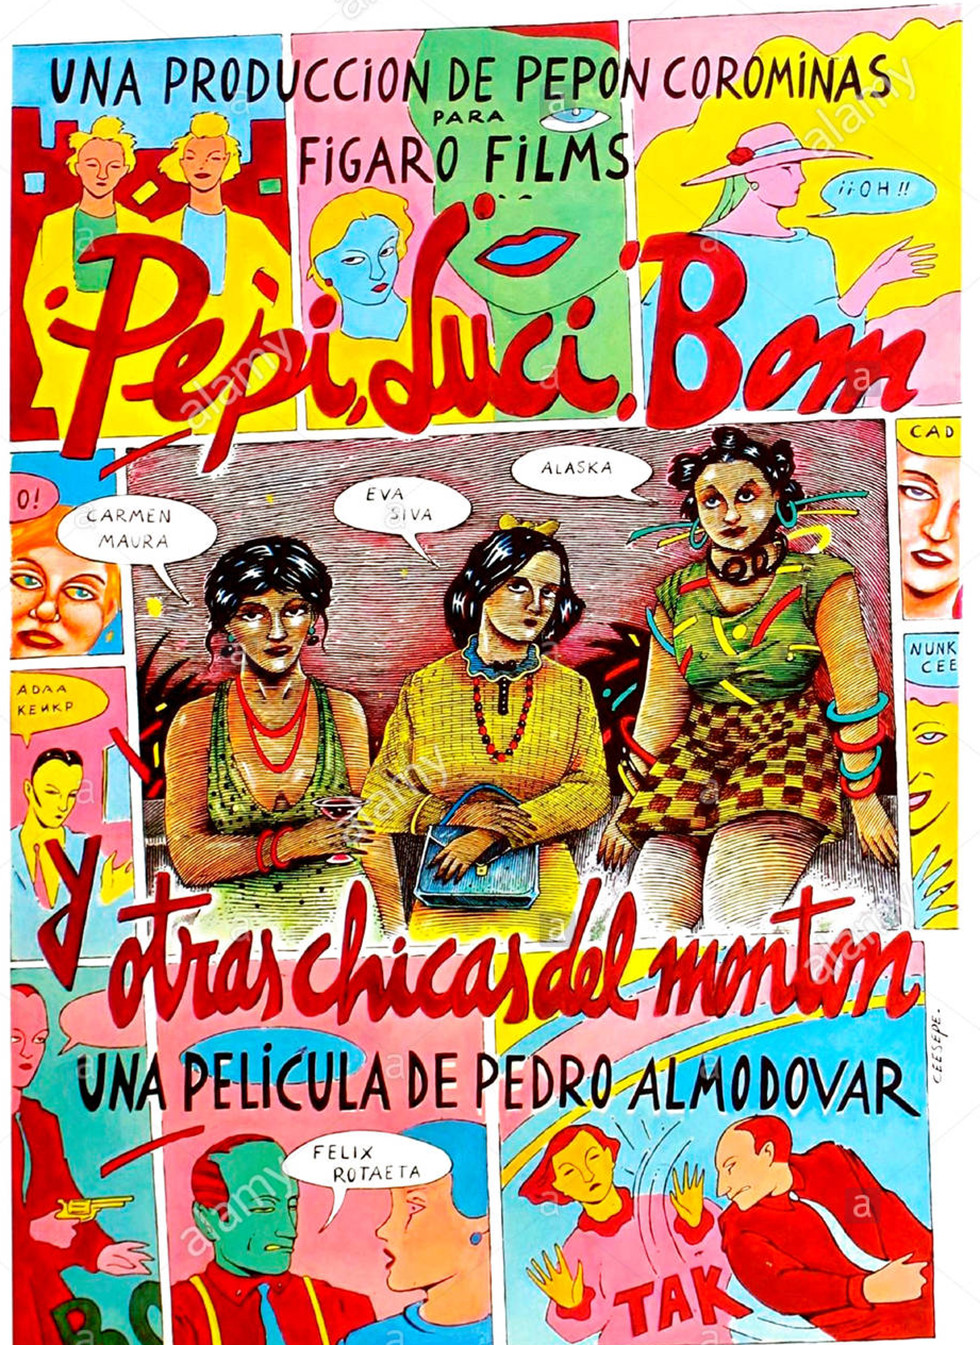 Cartel de Ceesepe para el filme de Pedro Almodóvar, Pepi, Luci, Bom y otras cgicas del montón